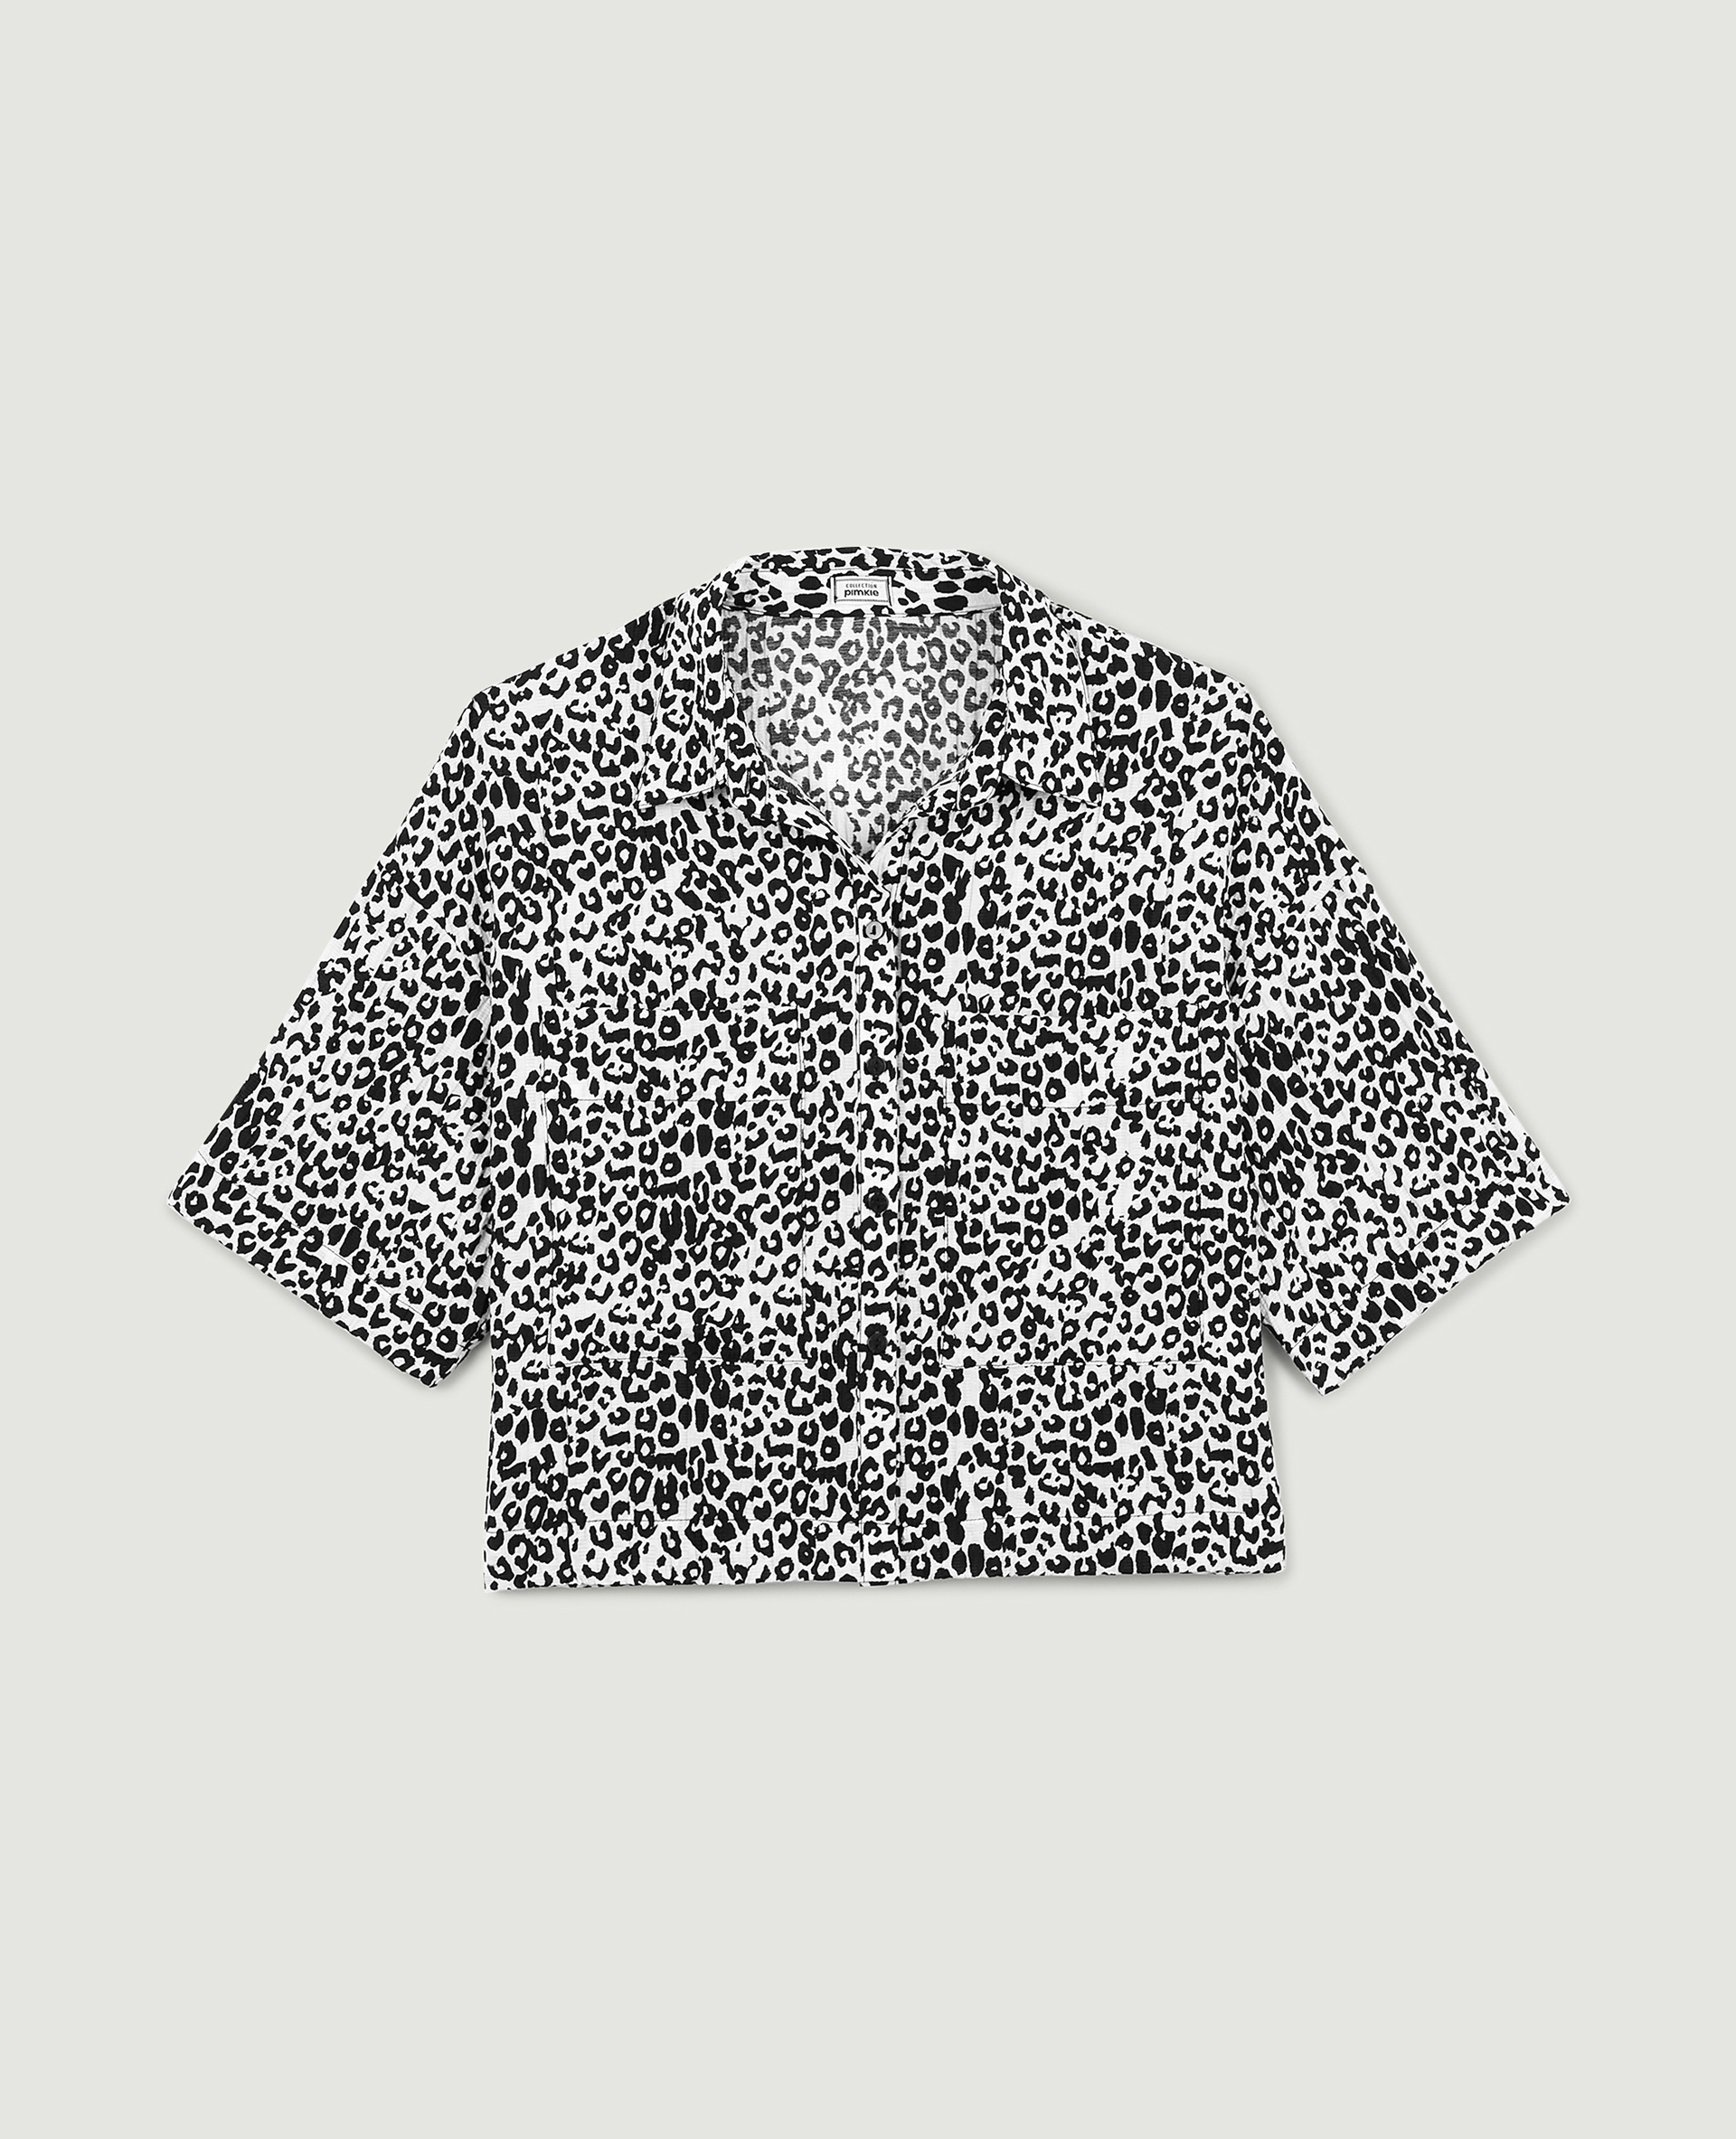 Chemisette texturée motif léopard noir - Pimkie